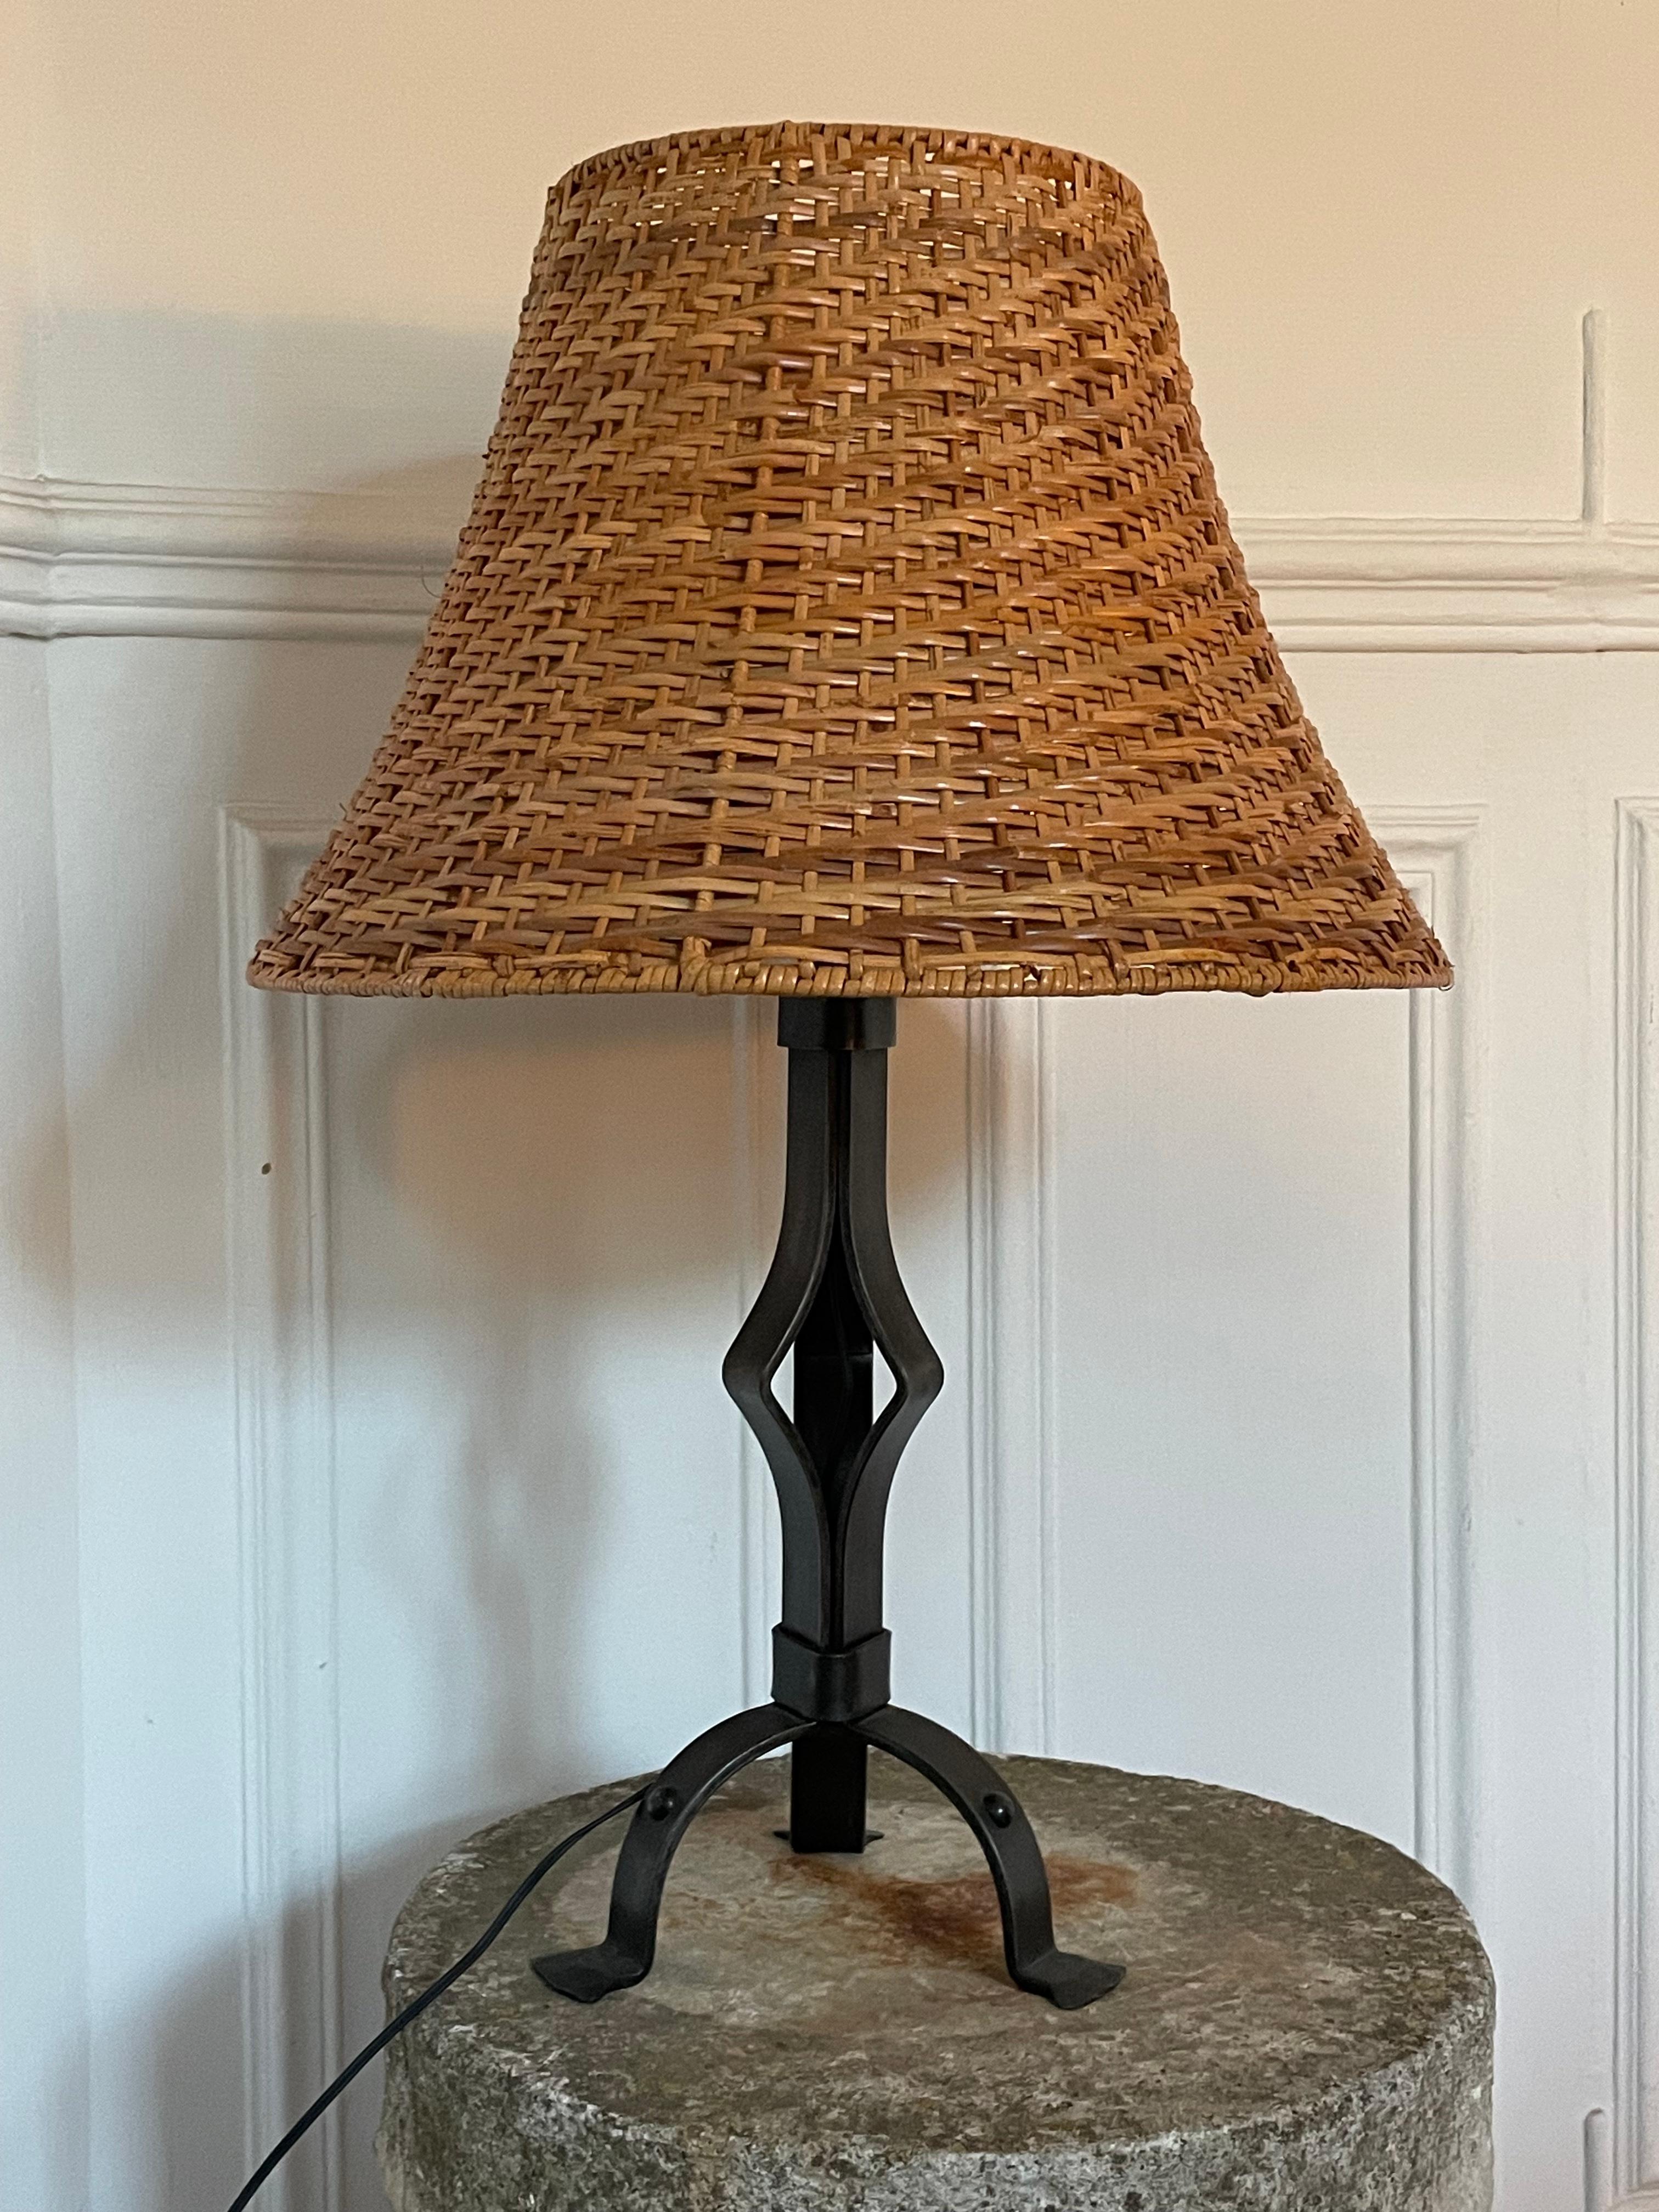 Große, imposante schmiedeeiserne Lampe aus den 1950er Jahren.

Schweres Gewicht, Maße 63cm und 39cm ohne Schirm.
Persönliche Zustellung oder kostenlose Zustellung in Paris.